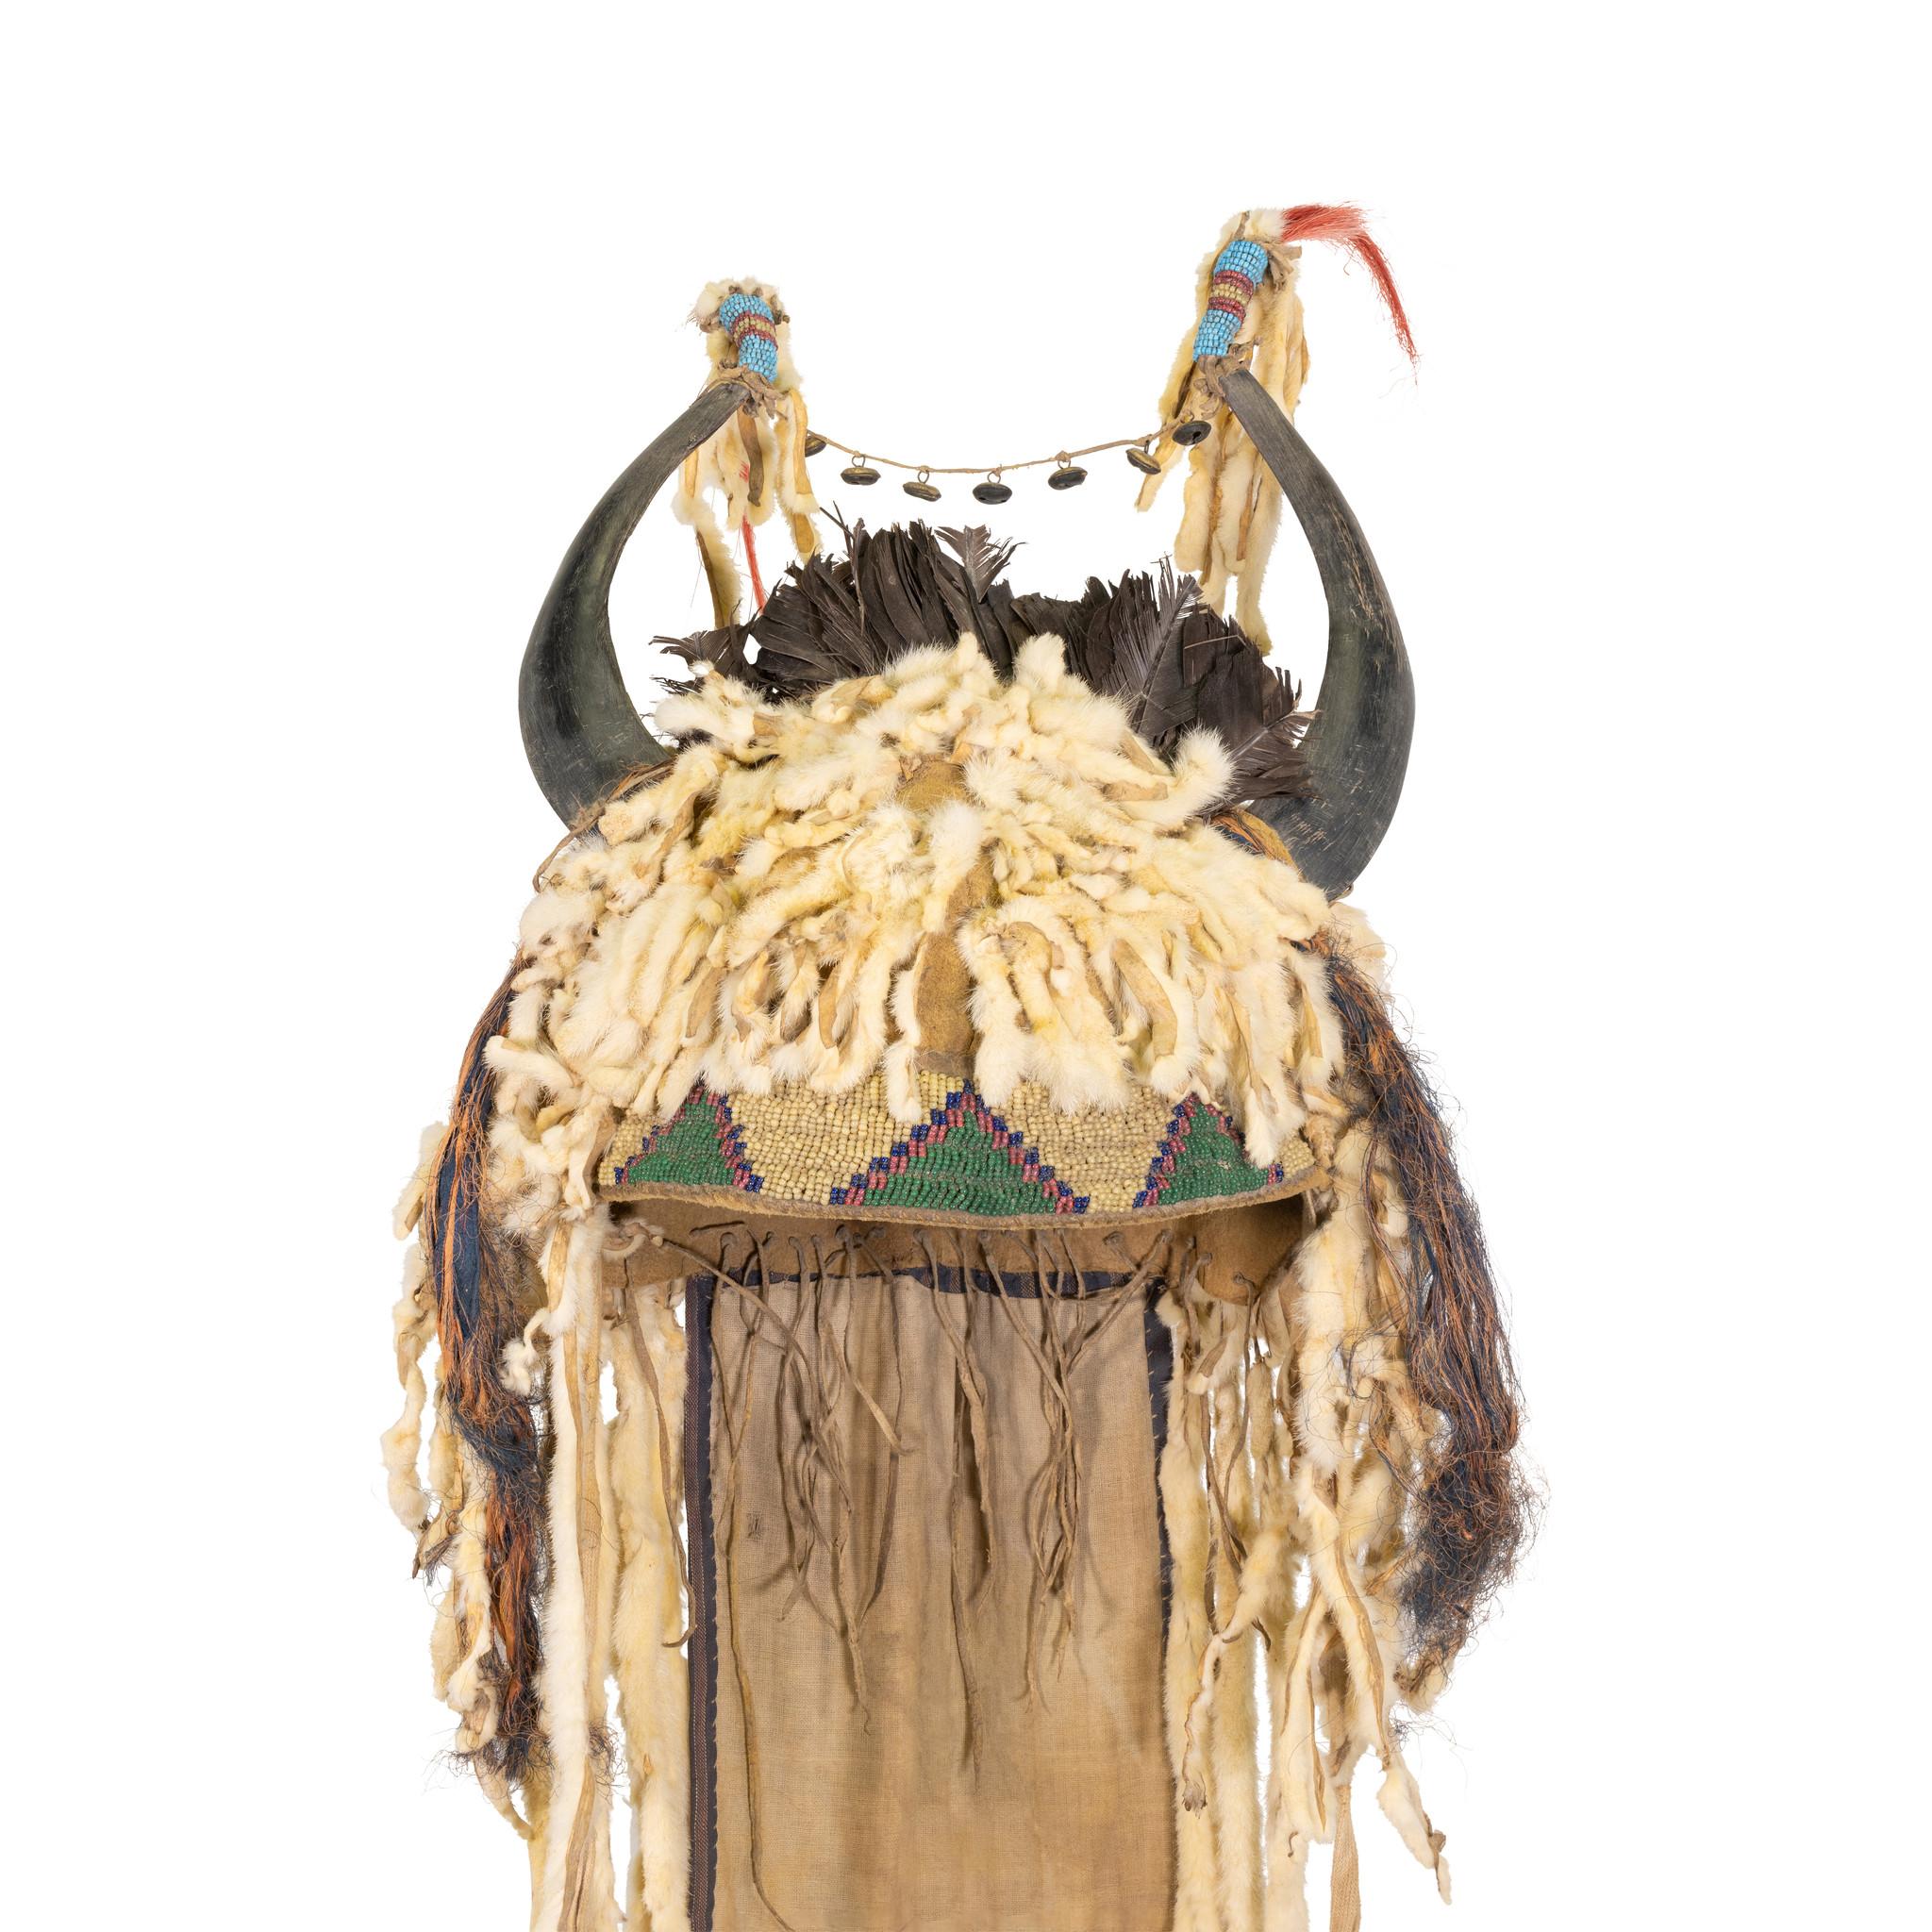 Véritable bonnet sioux en corne fendue du 19e siècle, fabriqué par les Amérindiens, avec doublure en peau de buffle. De longues queues d'hermine pendantes, dont les extrémités sont perlées de jaunes gras et de cœurs rouges garnis de crins de cheval.